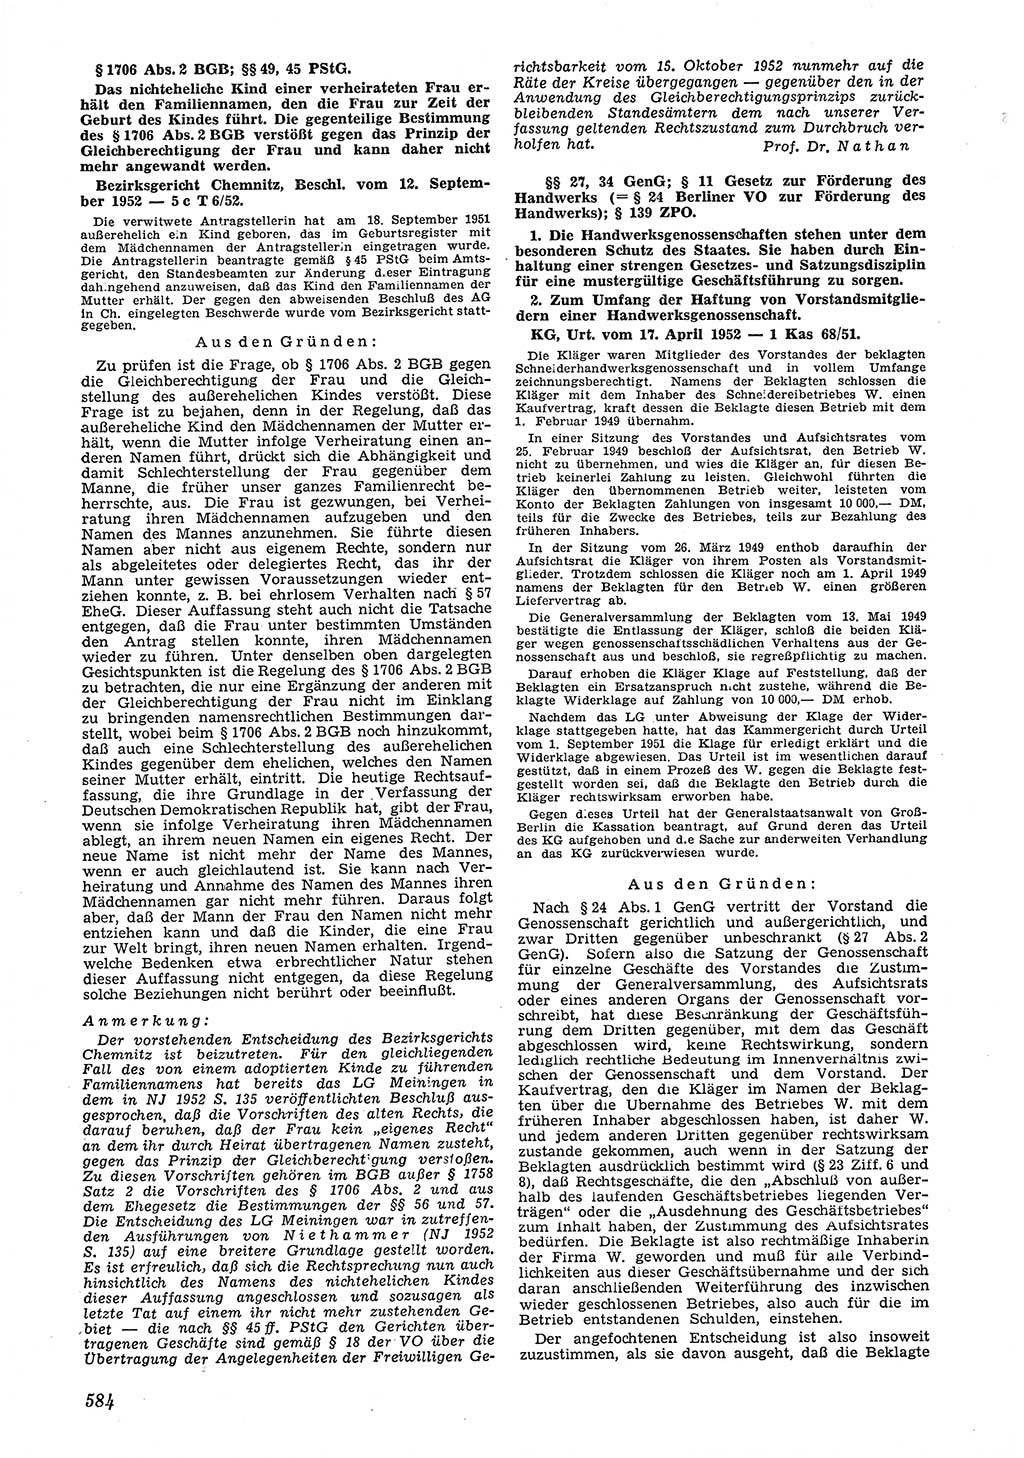 Neue Justiz (NJ), Zeitschrift für Recht und Rechtswissenschaft [Deutsche Demokratische Republik (DDR)], 6. Jahrgang 1952, Seite 584 (NJ DDR 1952, S. 584)